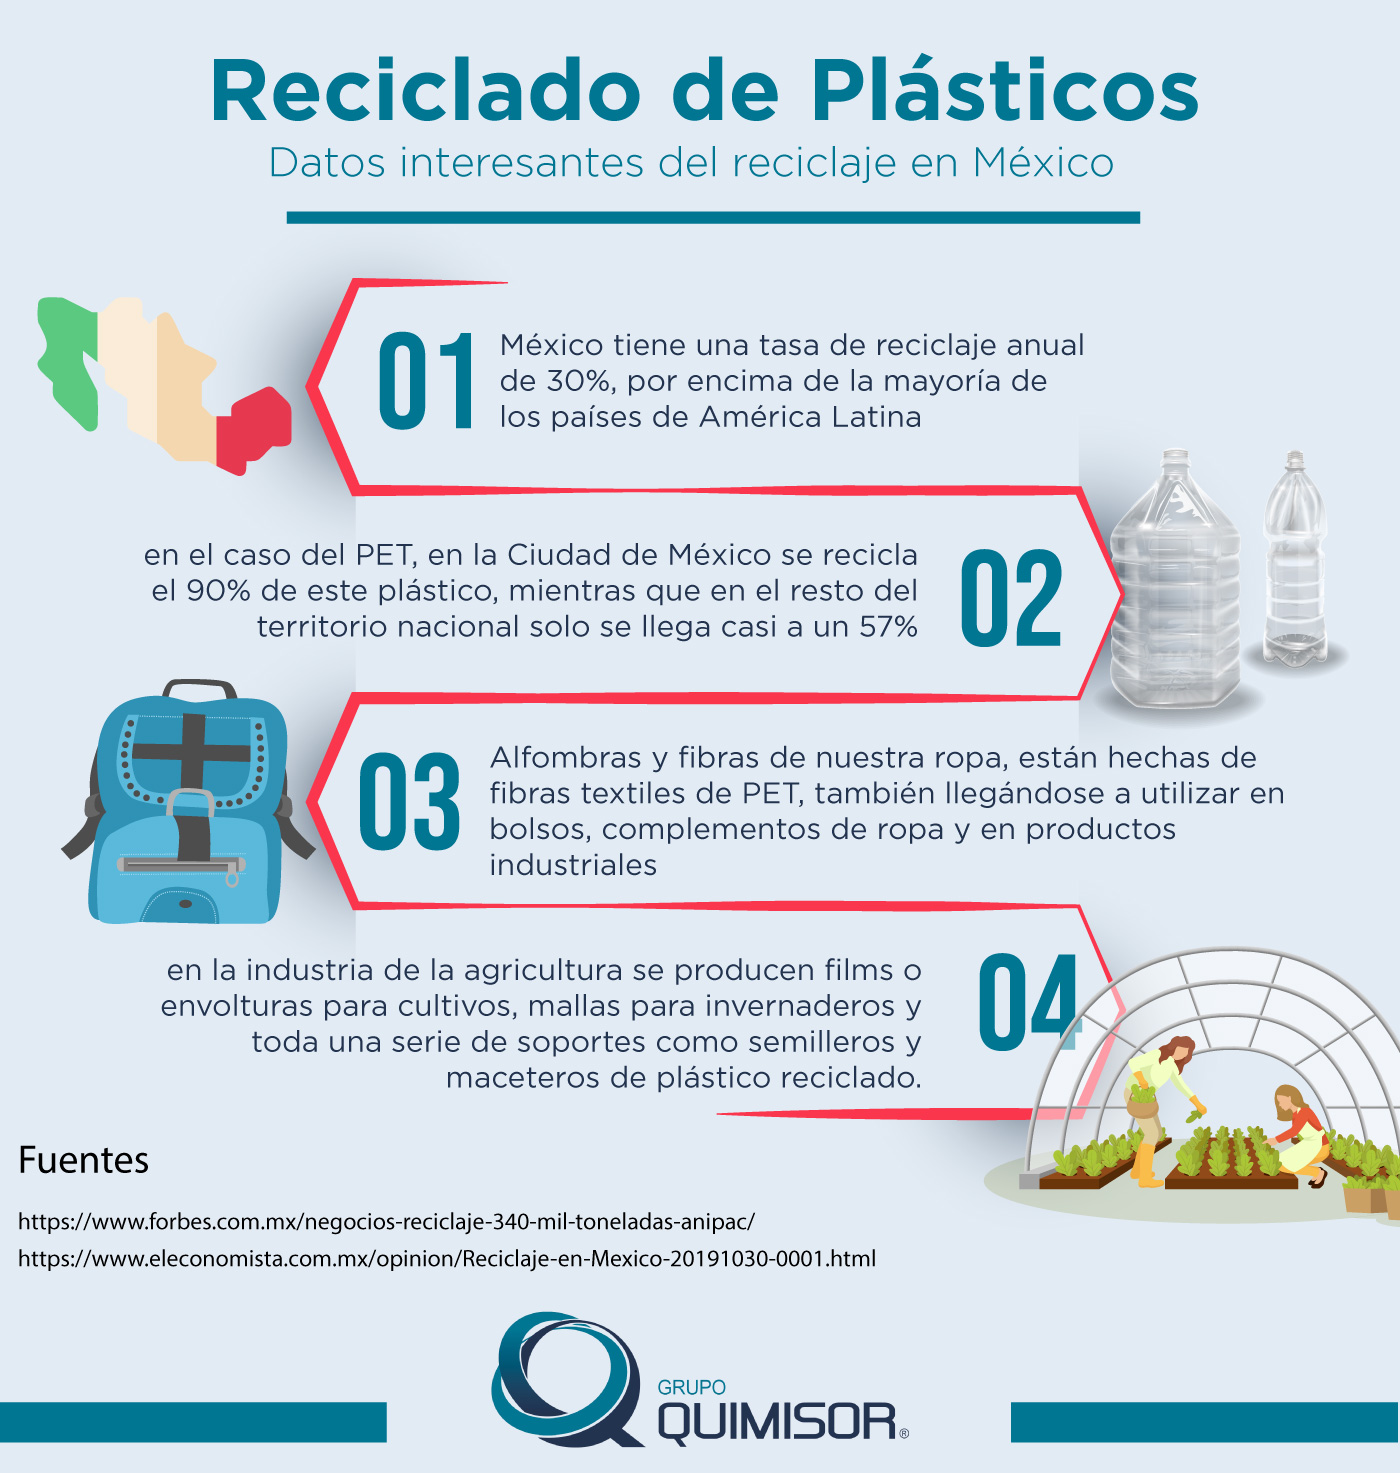 Beneficios de los palets de plástico reciclado